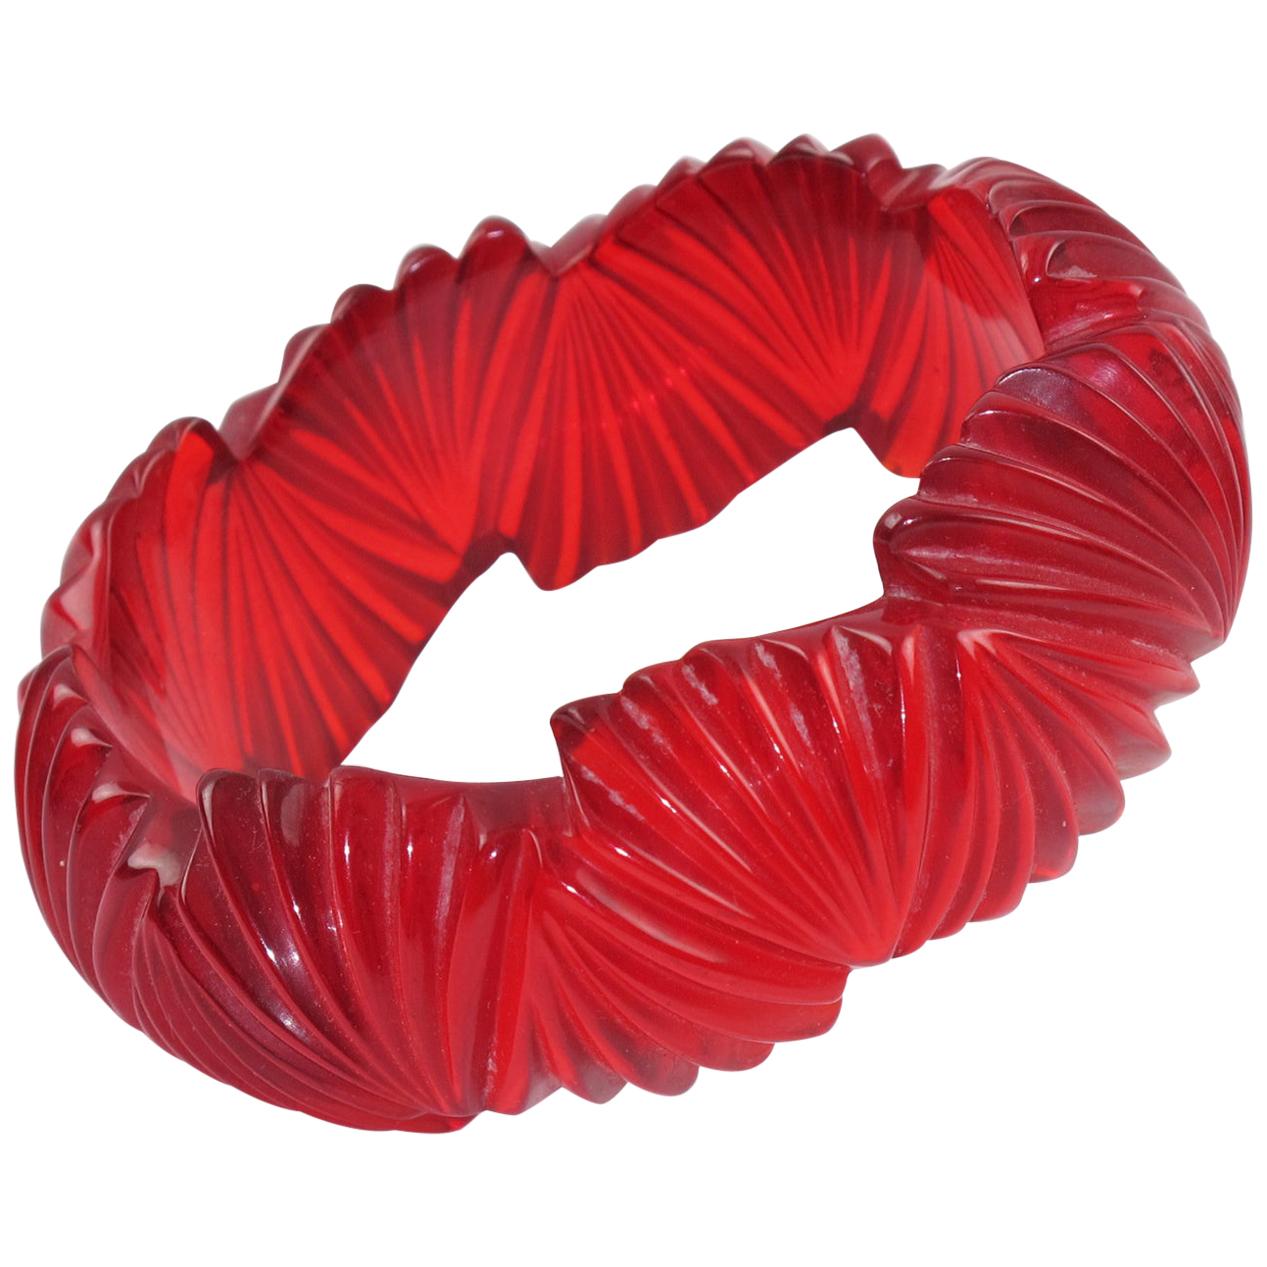 Bakelite Candy Apple Red Carved Bangle Bracelet